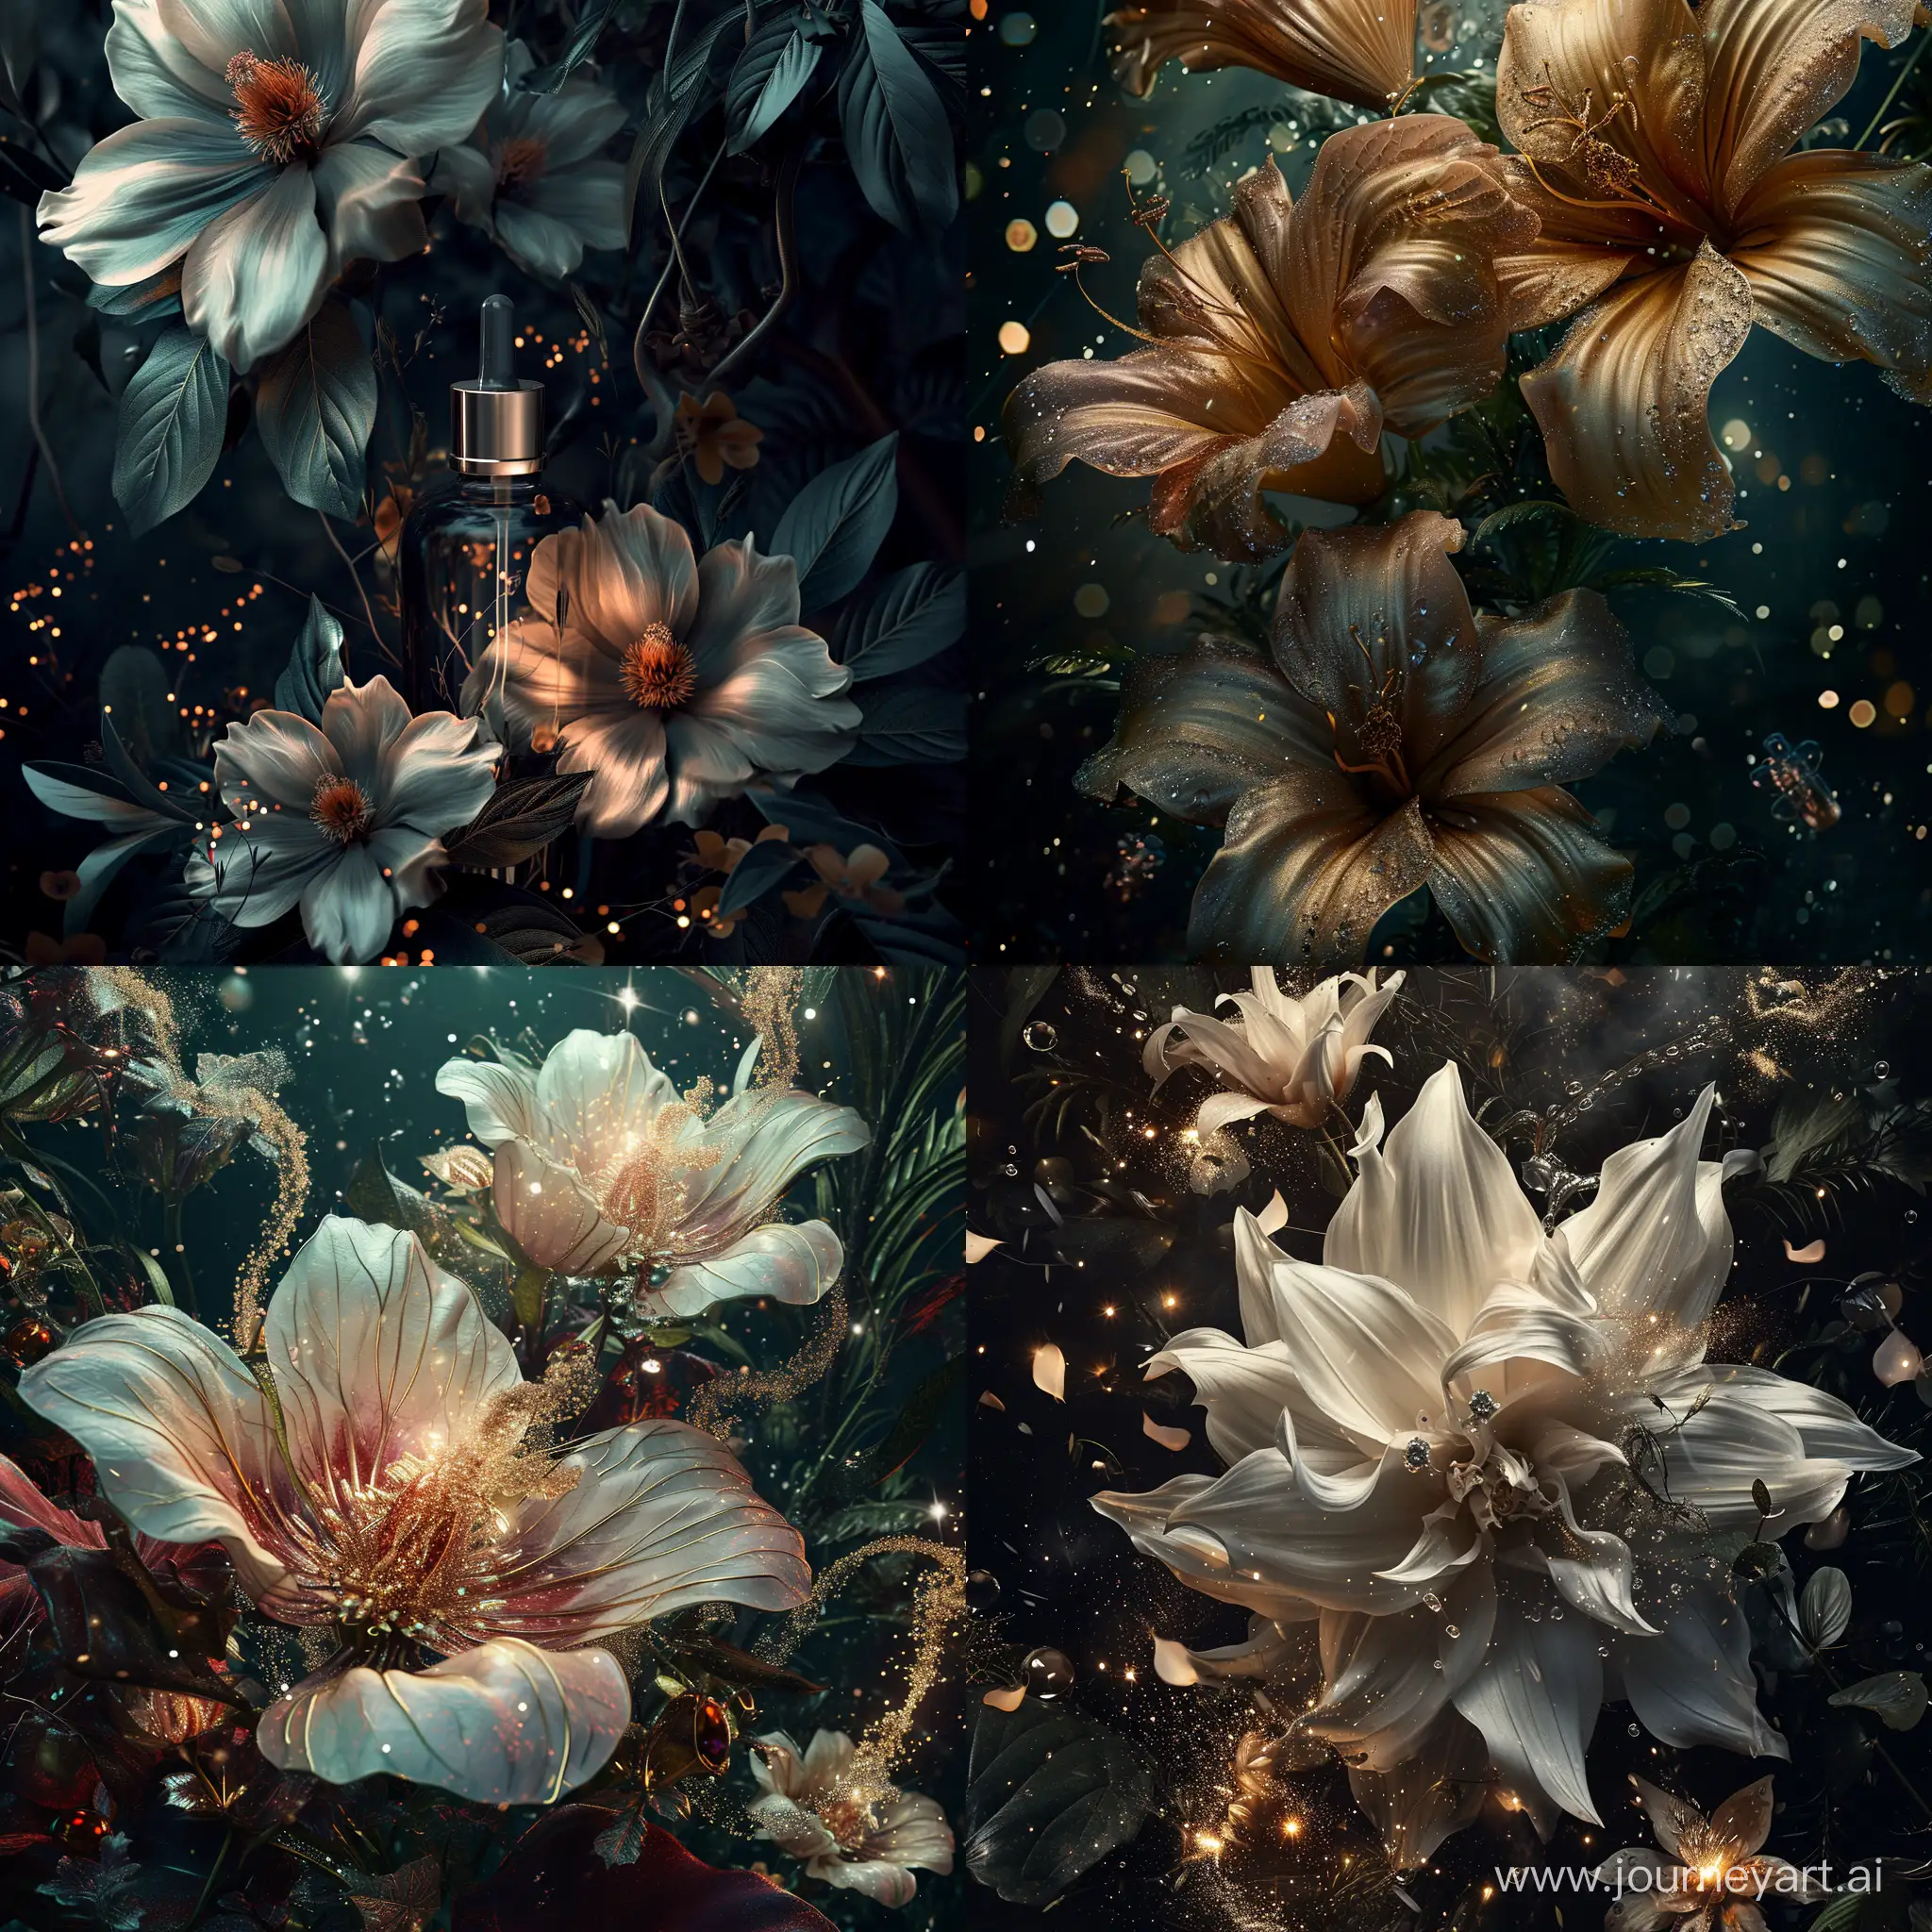 парфуми, лікарські трави, великі дивні квіти, фотореалістичний, детальний, темний искрящийся загадковий фон, атмосферний